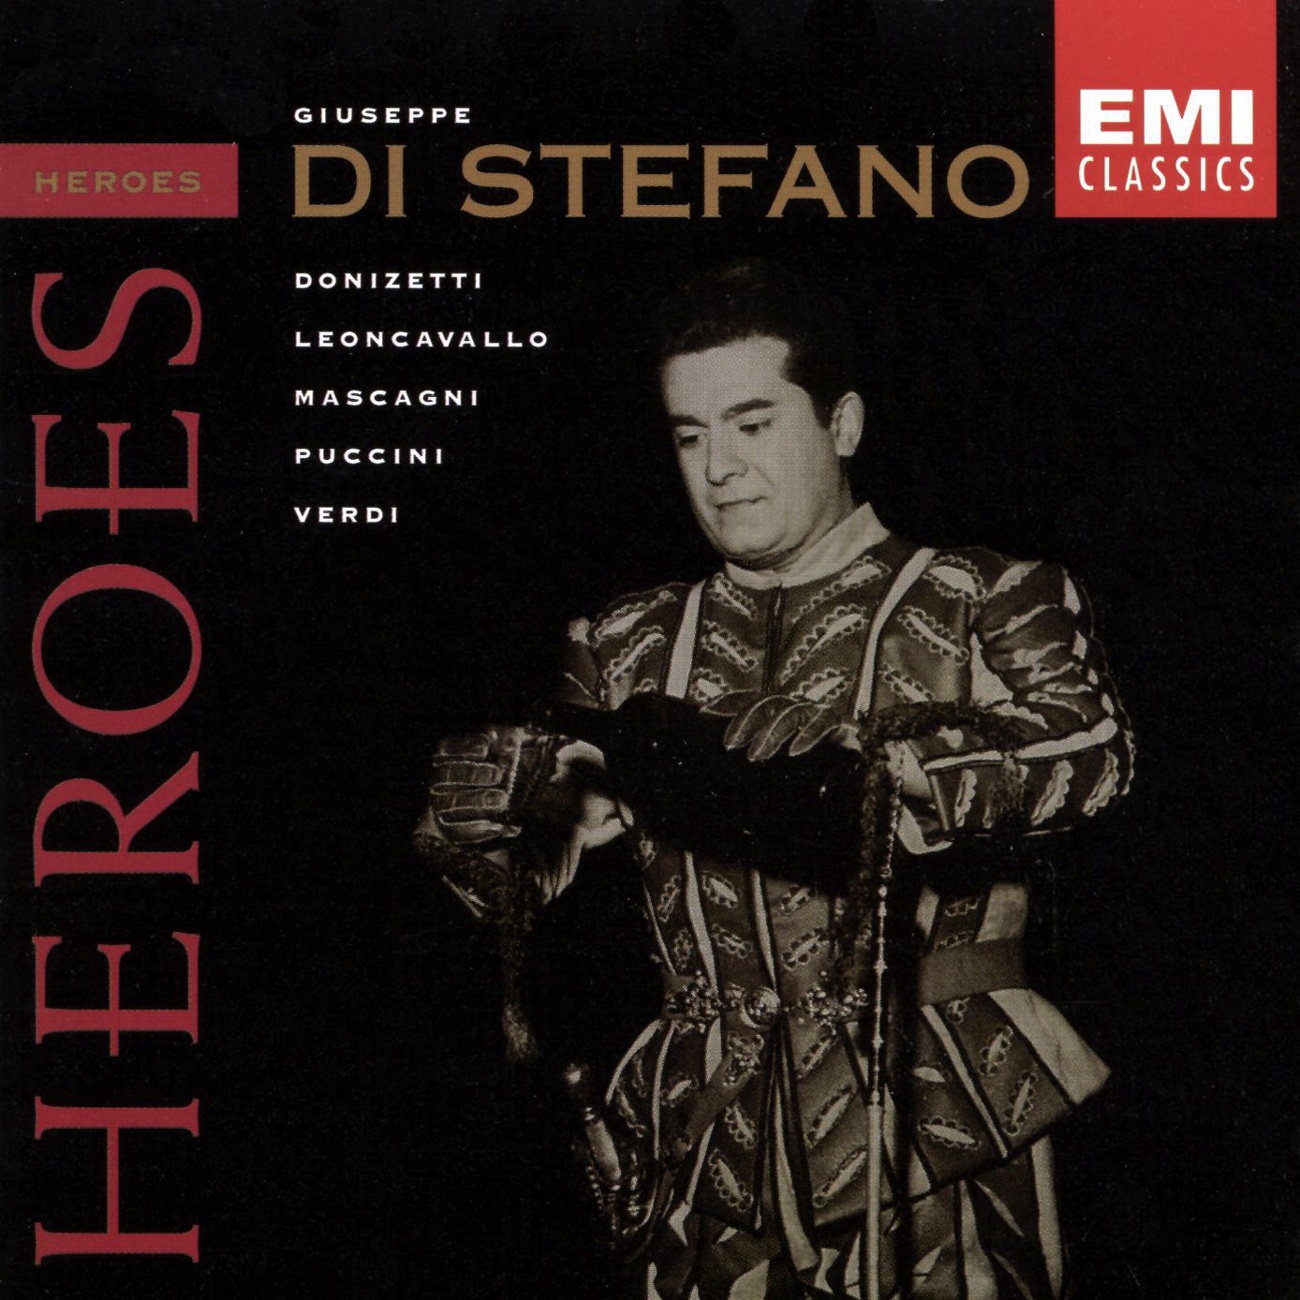 Heroes: Giuseppe Di Stefano